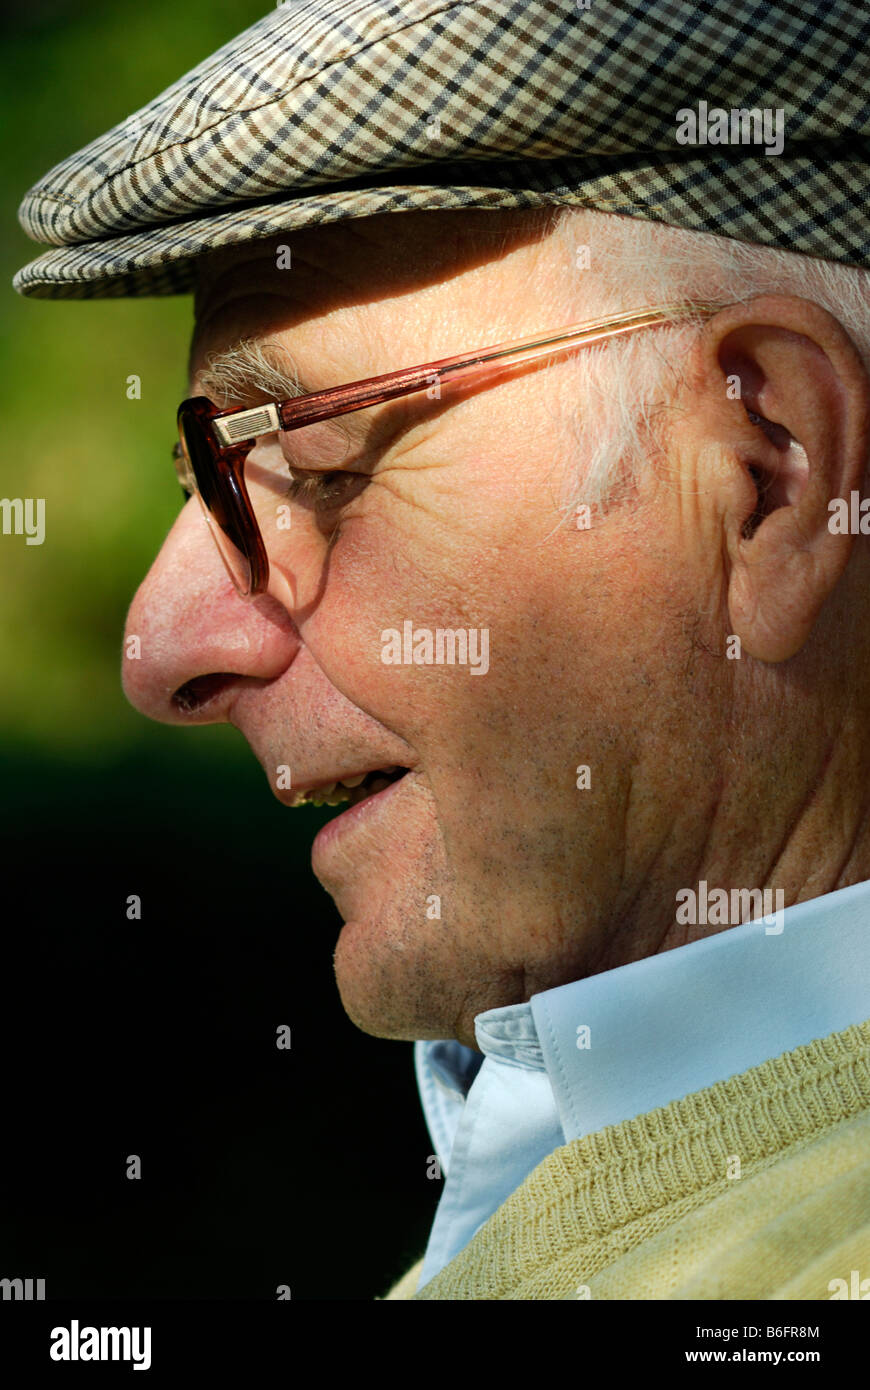 Vieil homme coiffé d'un bonnet Banque de photographies et d'images à haute  résolution - Alamy